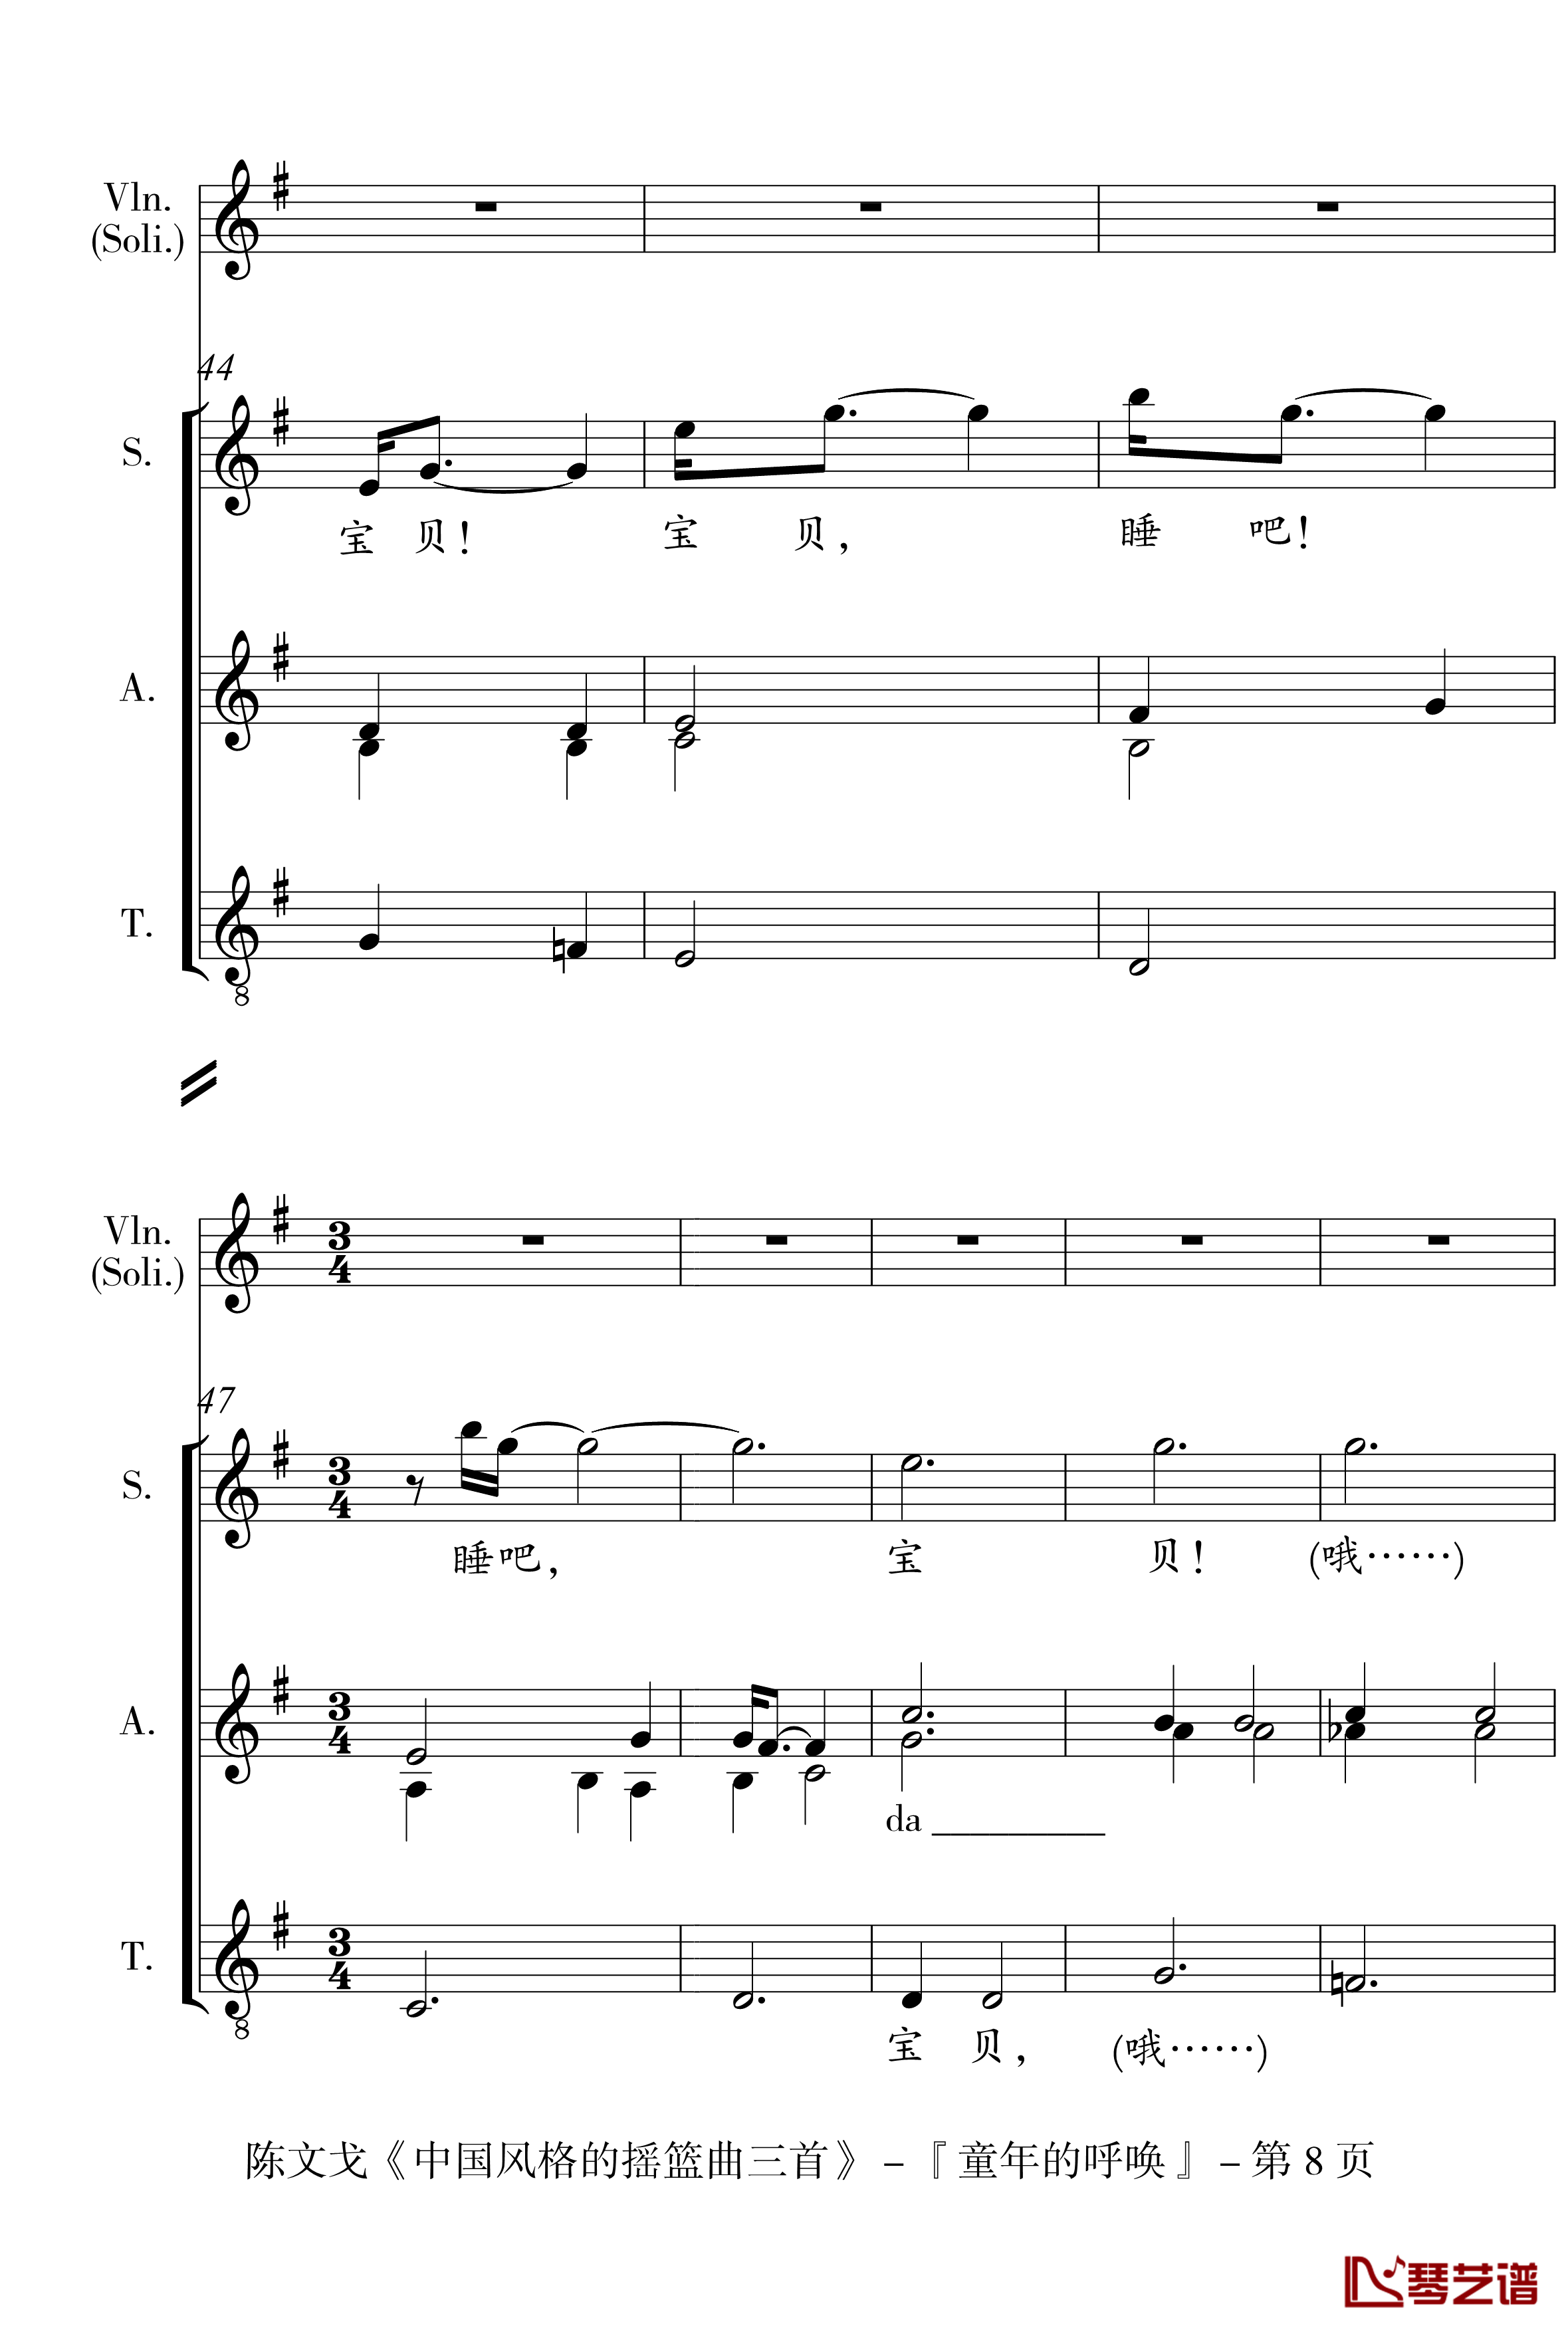 中国风格的合唱摇篮曲三首钢琴谱-I, II, III-陈文戈8